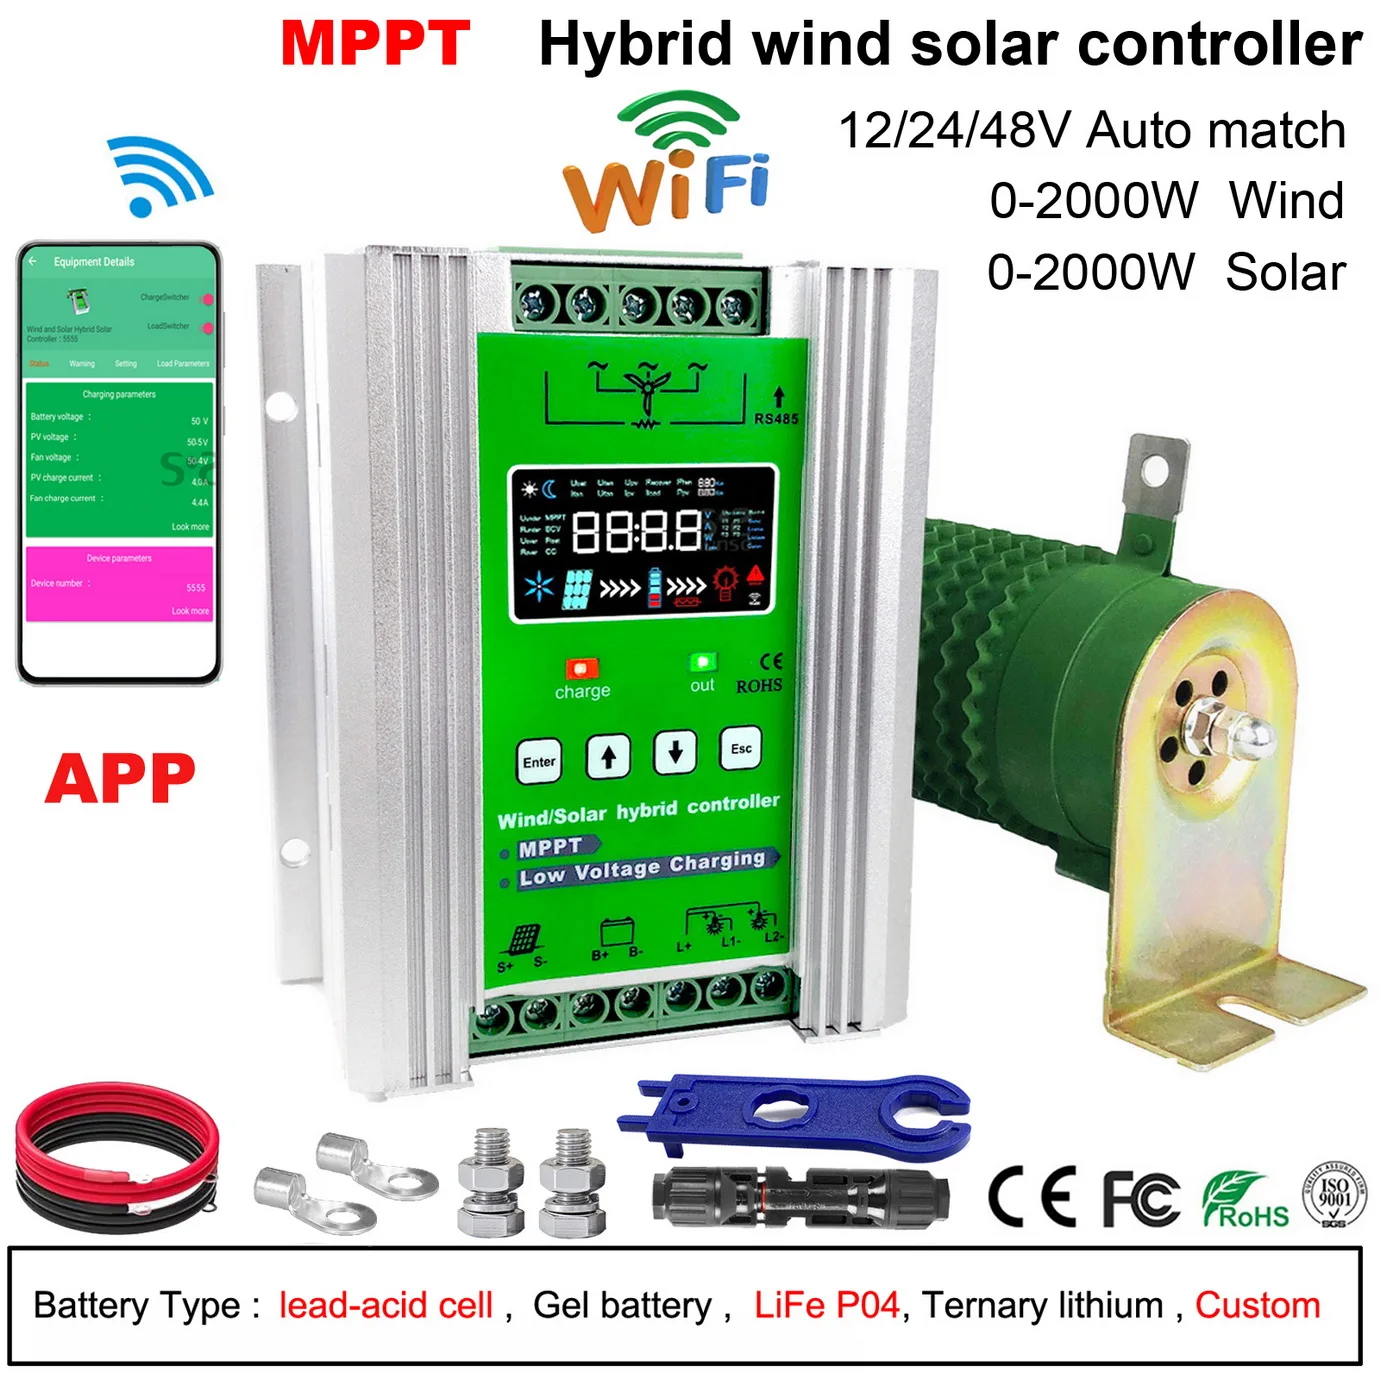 

3000W MPPT Hybrid Wind Solar Charge Controller Booster 12V 24V 48V Regulator With Dump Load For Off System Wind Generator PV